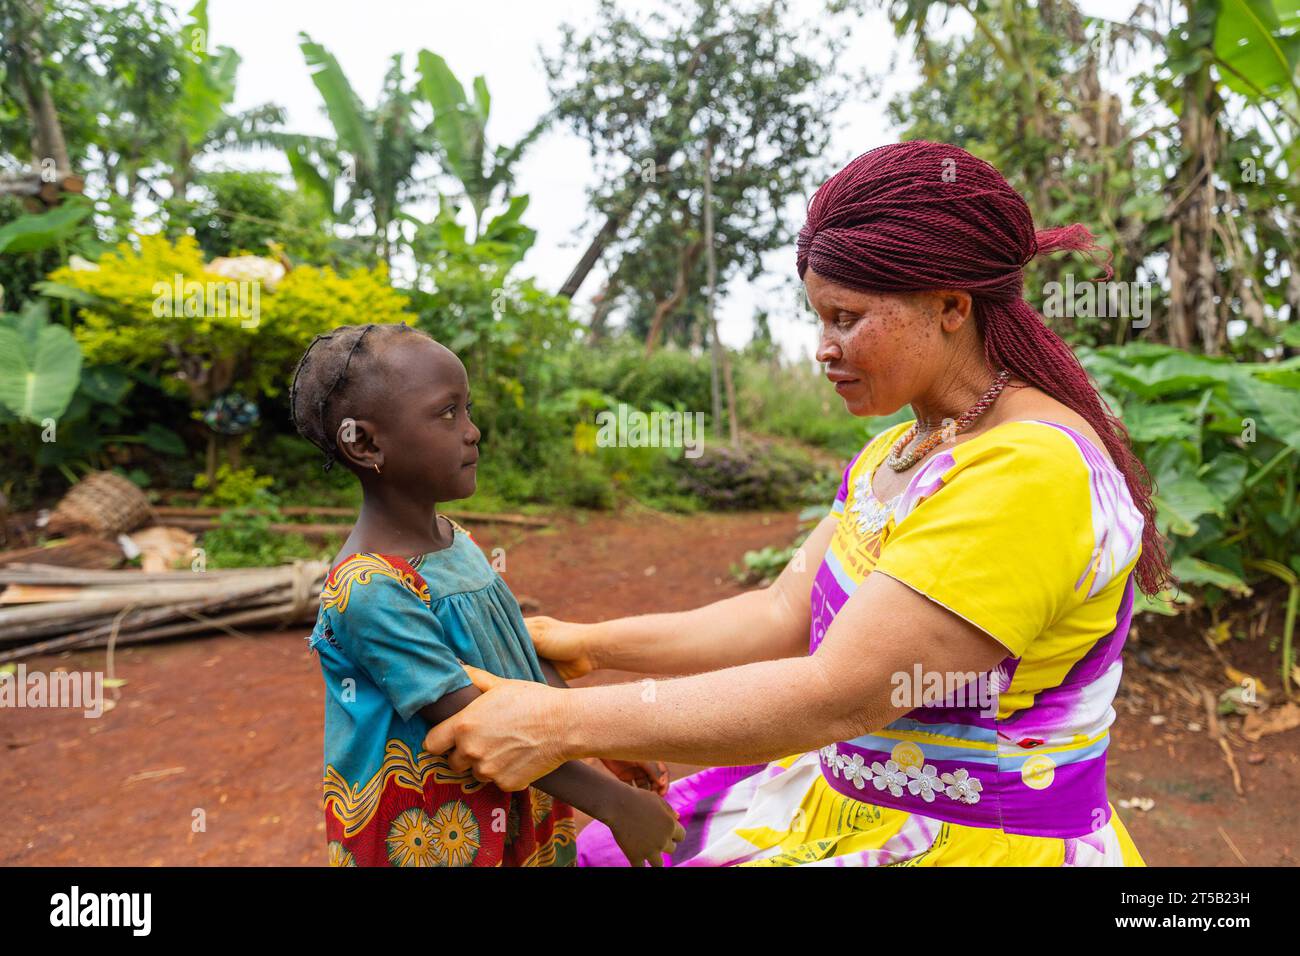 La giovane madre albina africana sta avendo una conversazione con la sua bambina e la sta educando. Foto Stock